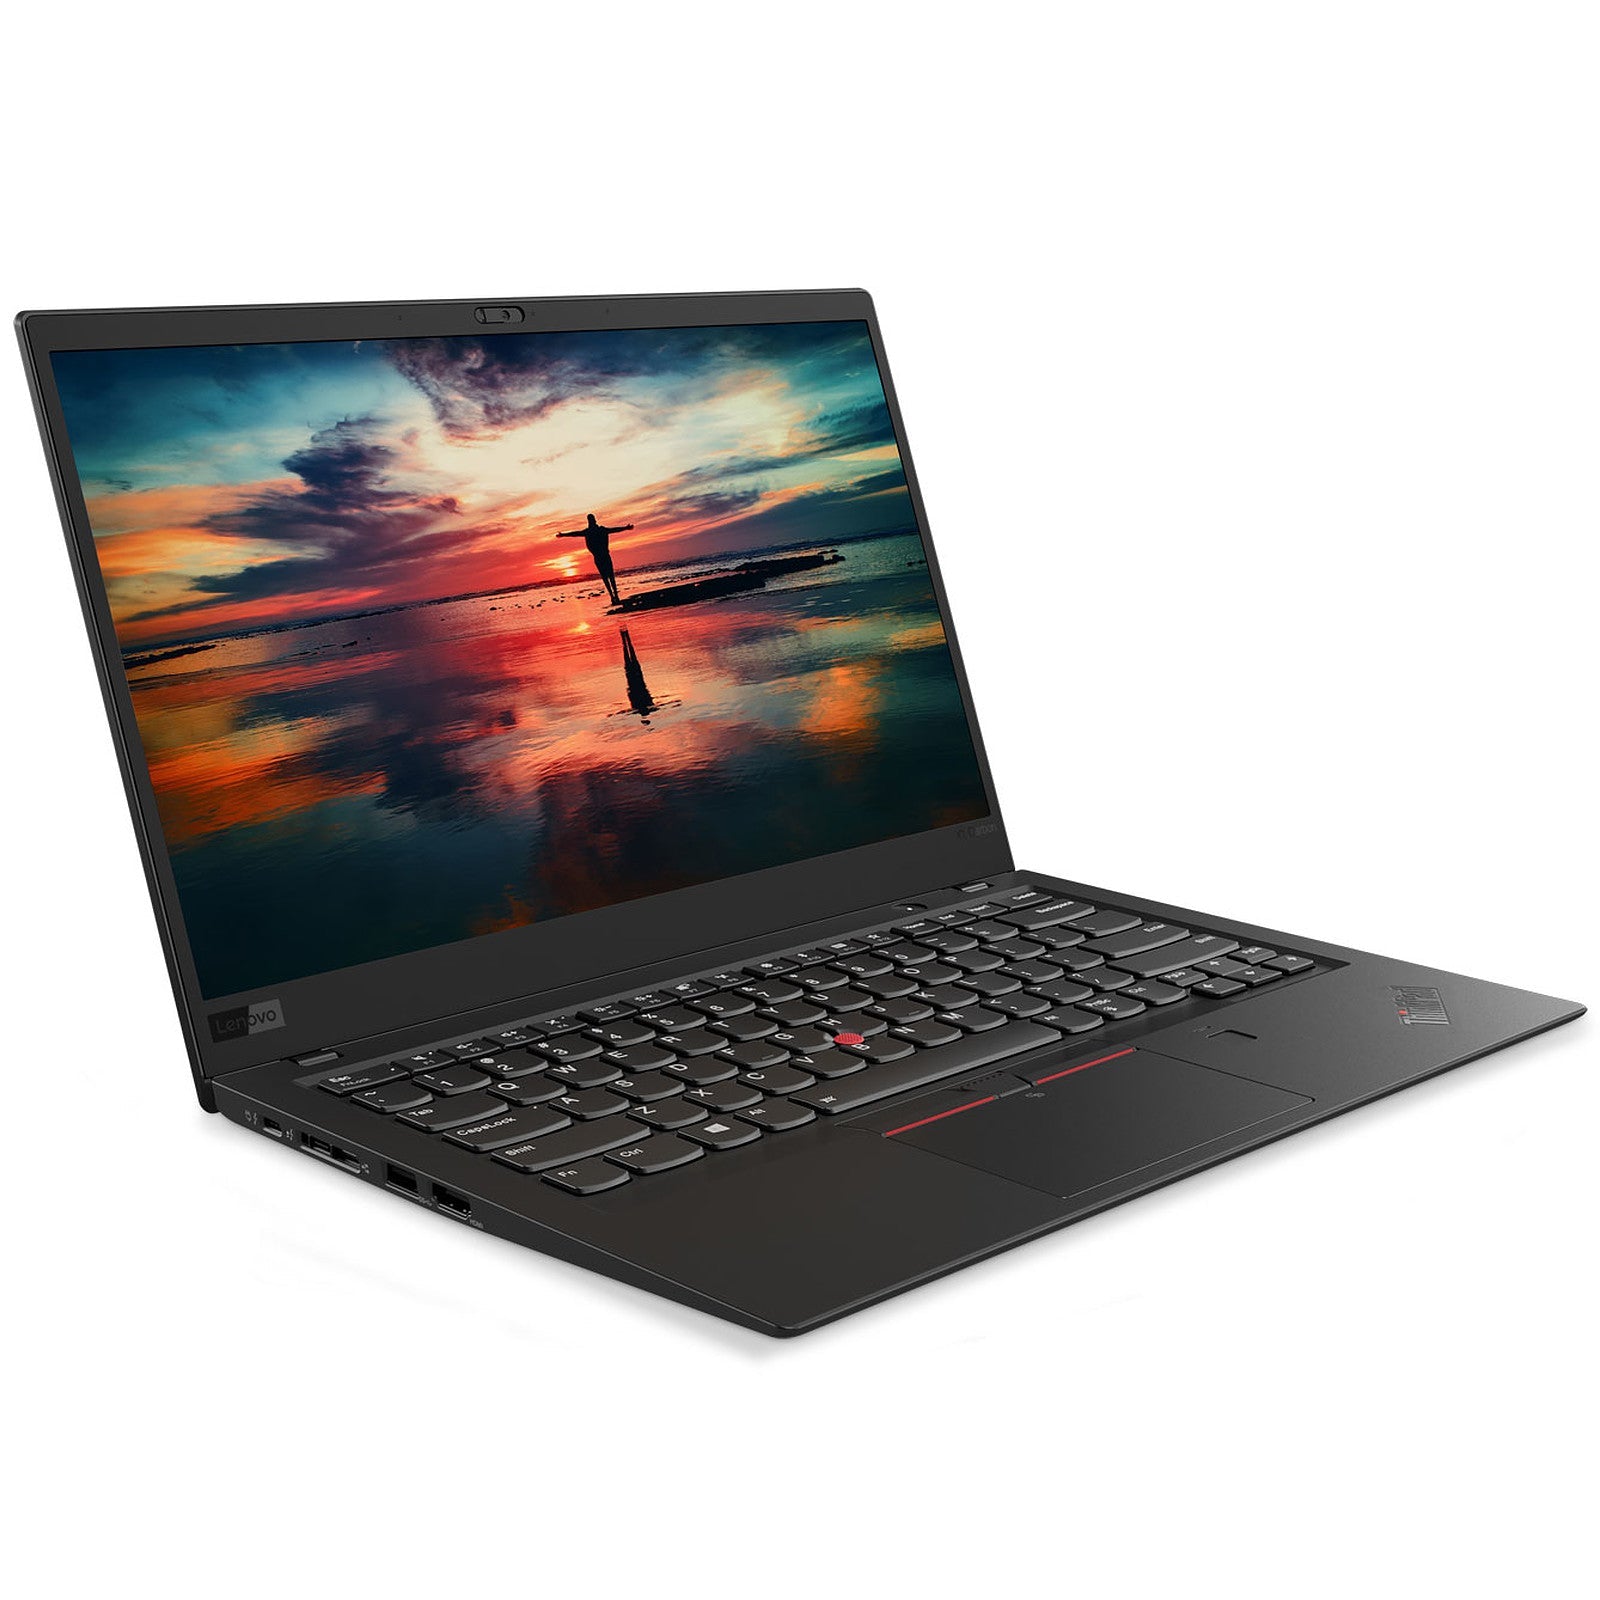 Billede af Lenovo ThinkPad X1 Carbon 6. gen. Touch | i5 | 8GB | 256GB SSD - Brugt - Meget god stand